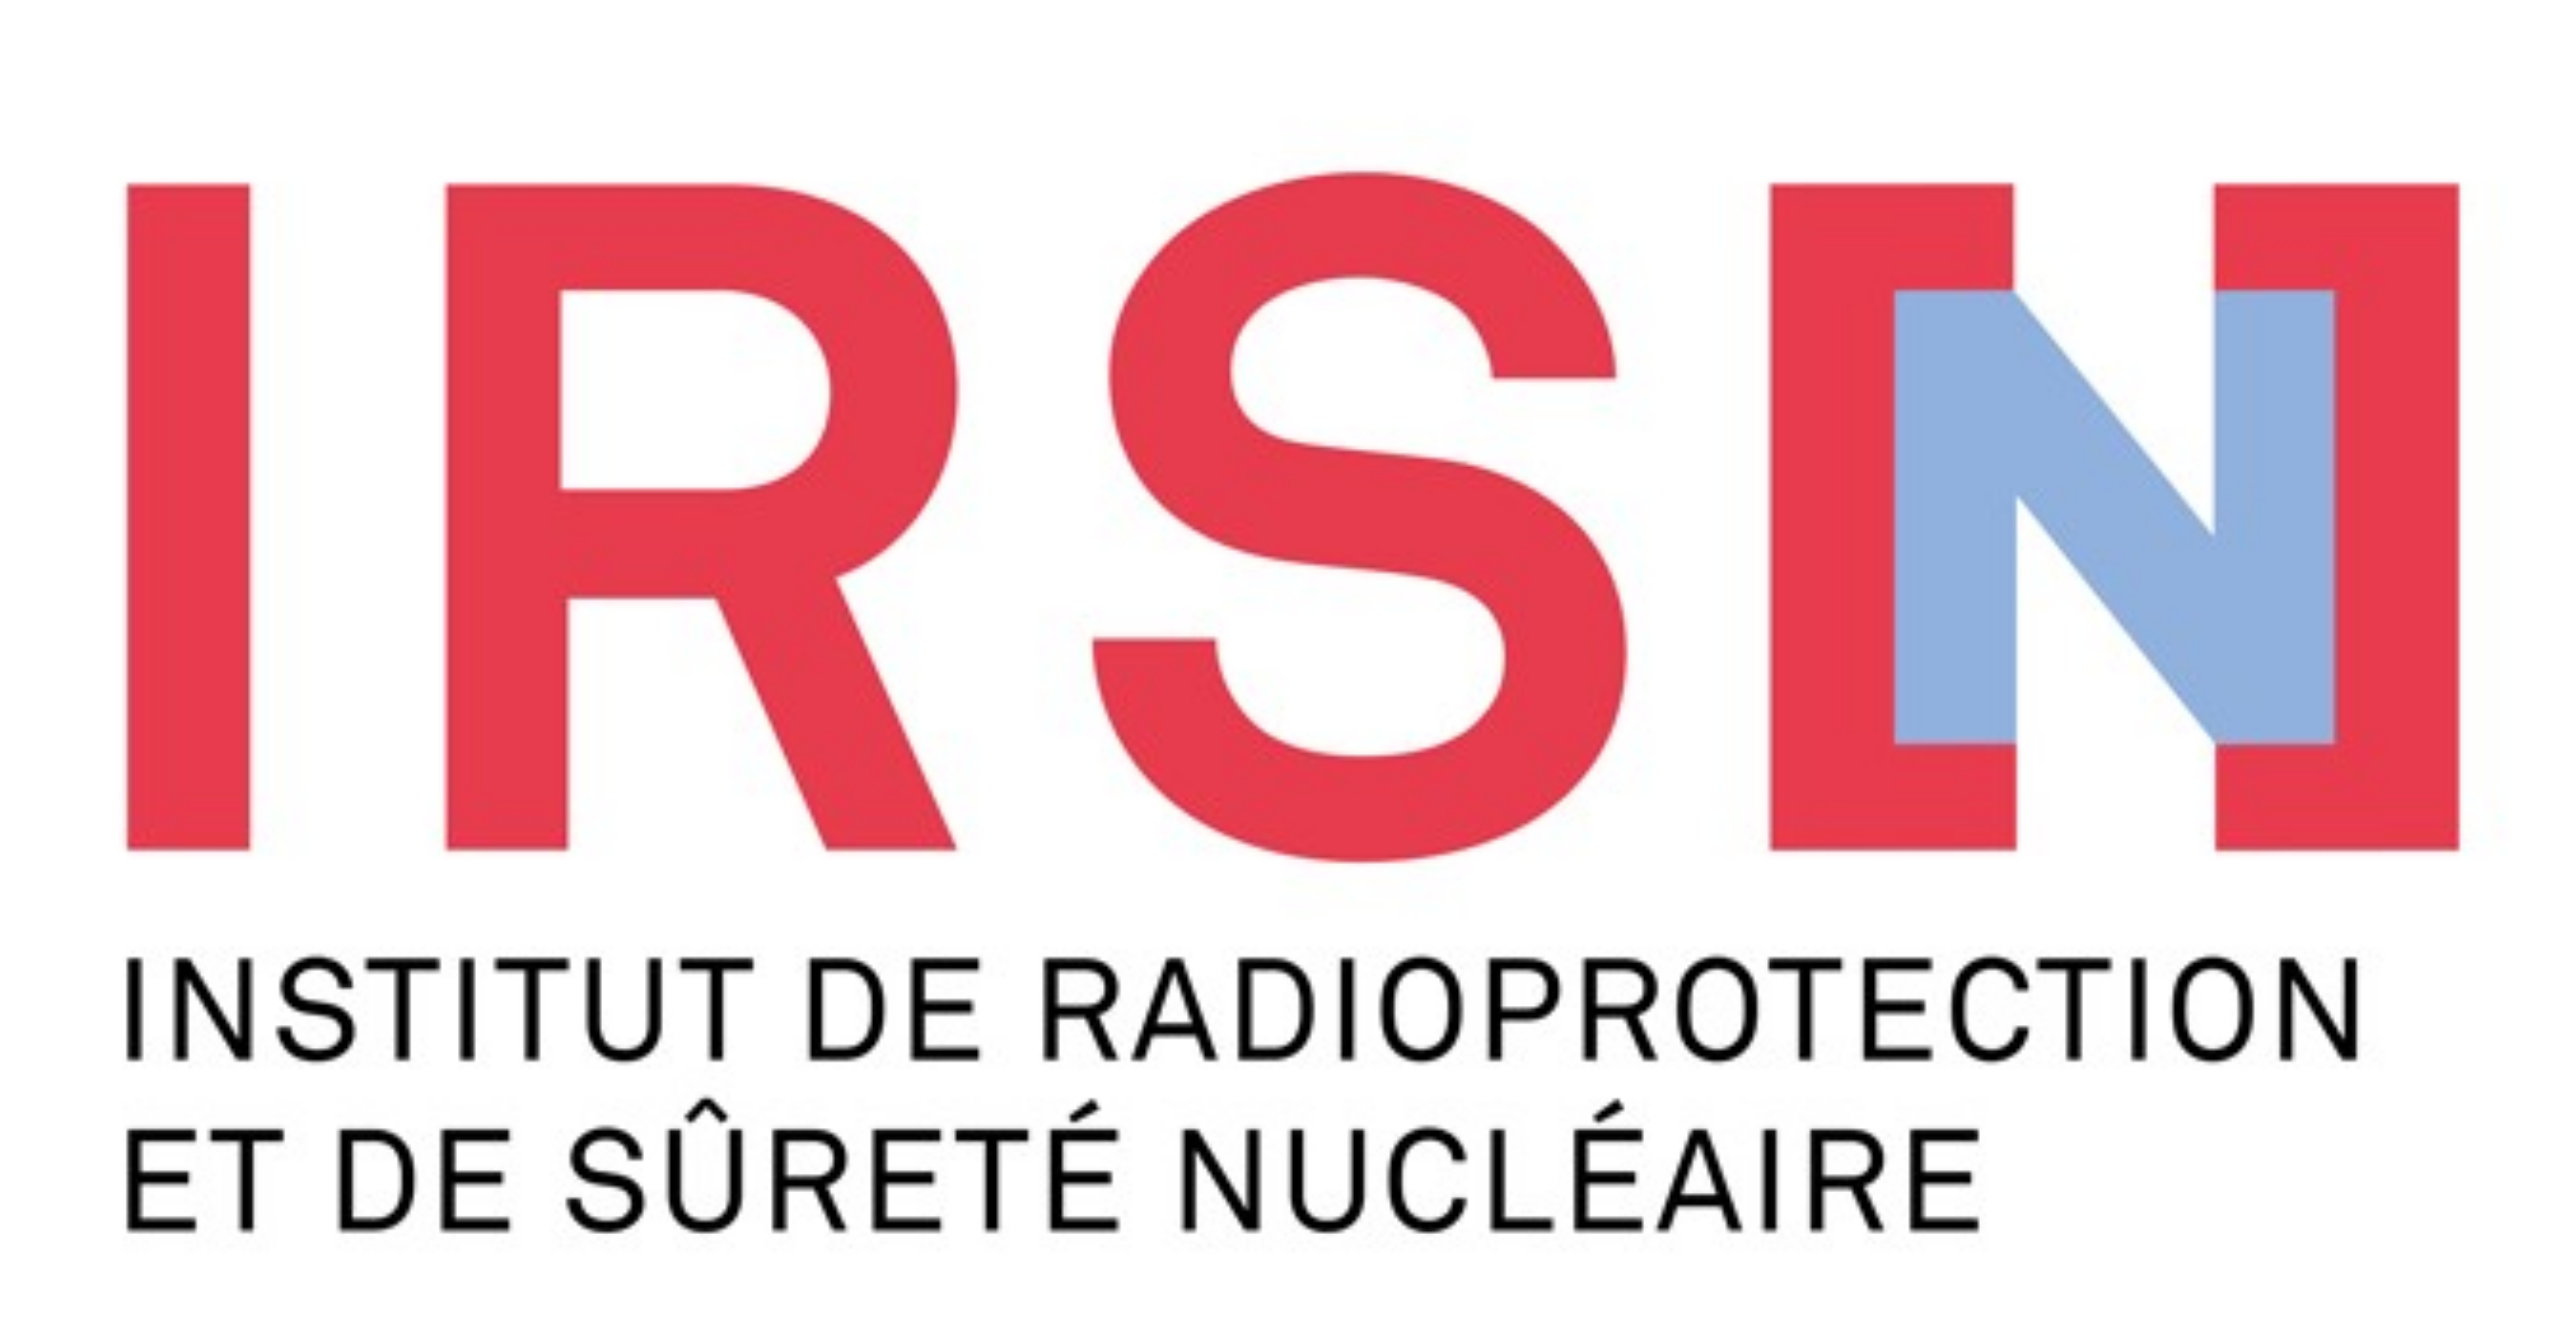 Institut de radioprotection et de sûreté nucléaire logo